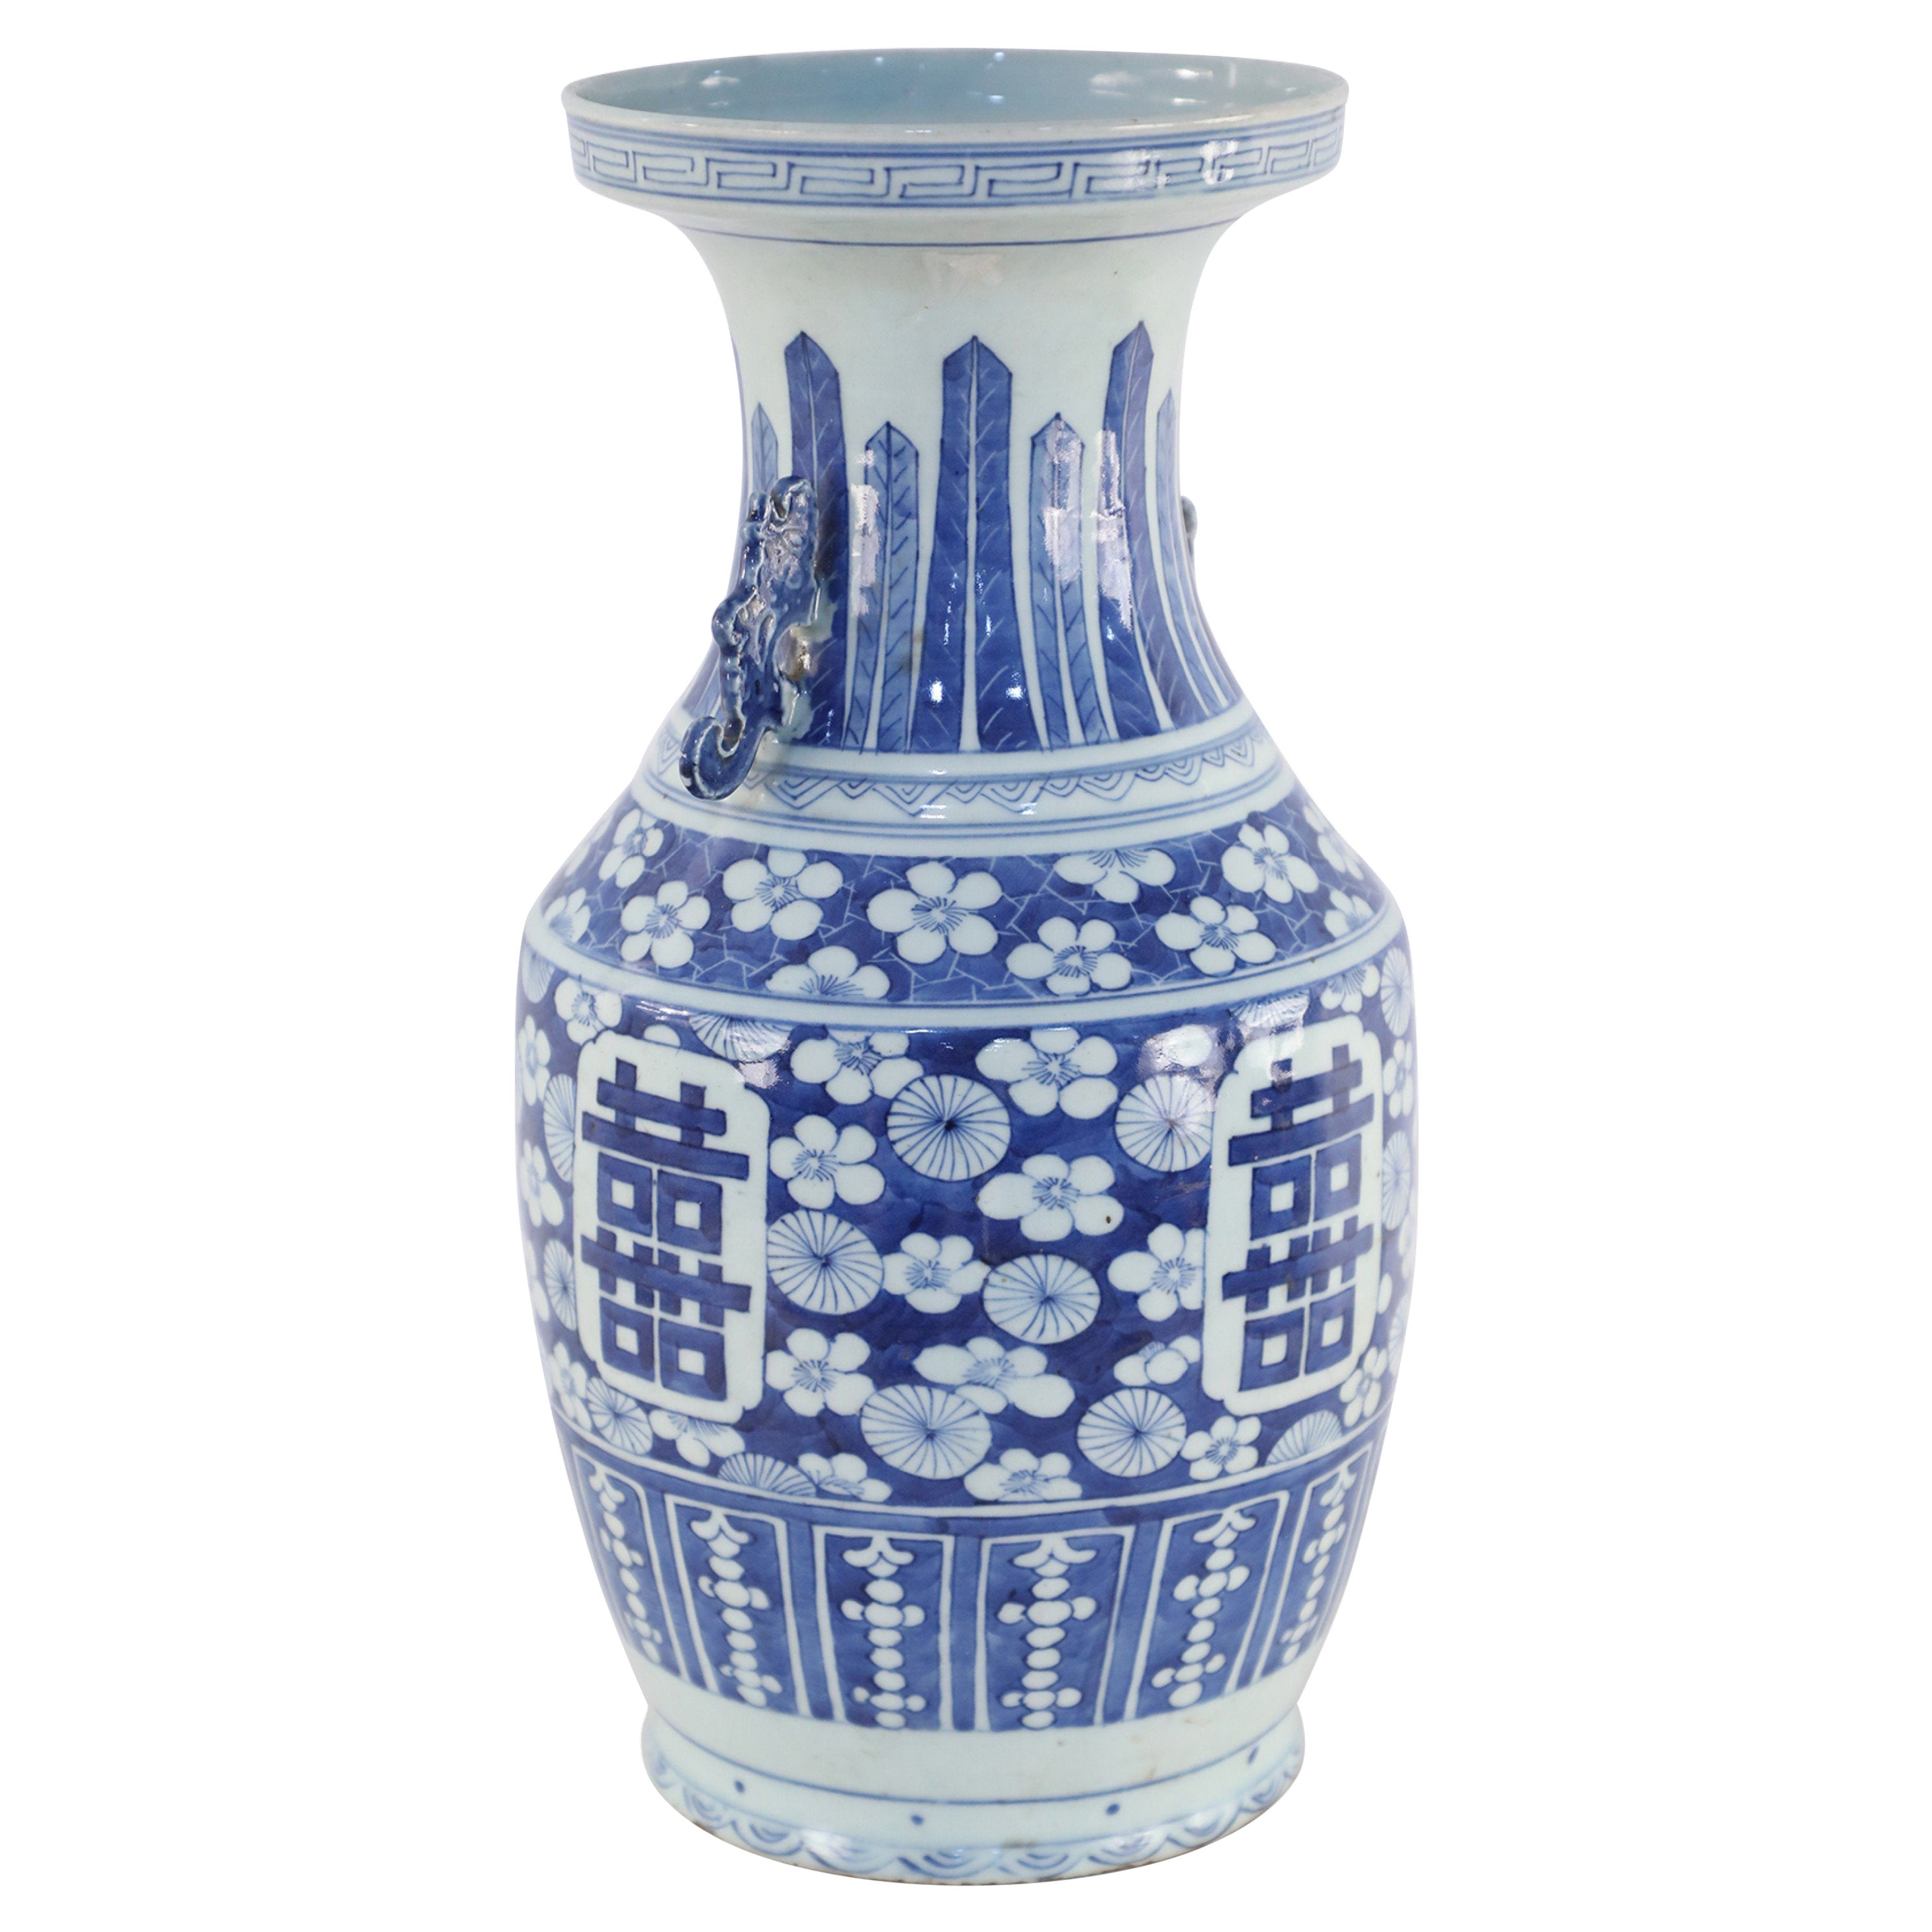 Chinesische chinesische Porzellanurne in Weiß und Blau mit Blumen- und Akzentdesign